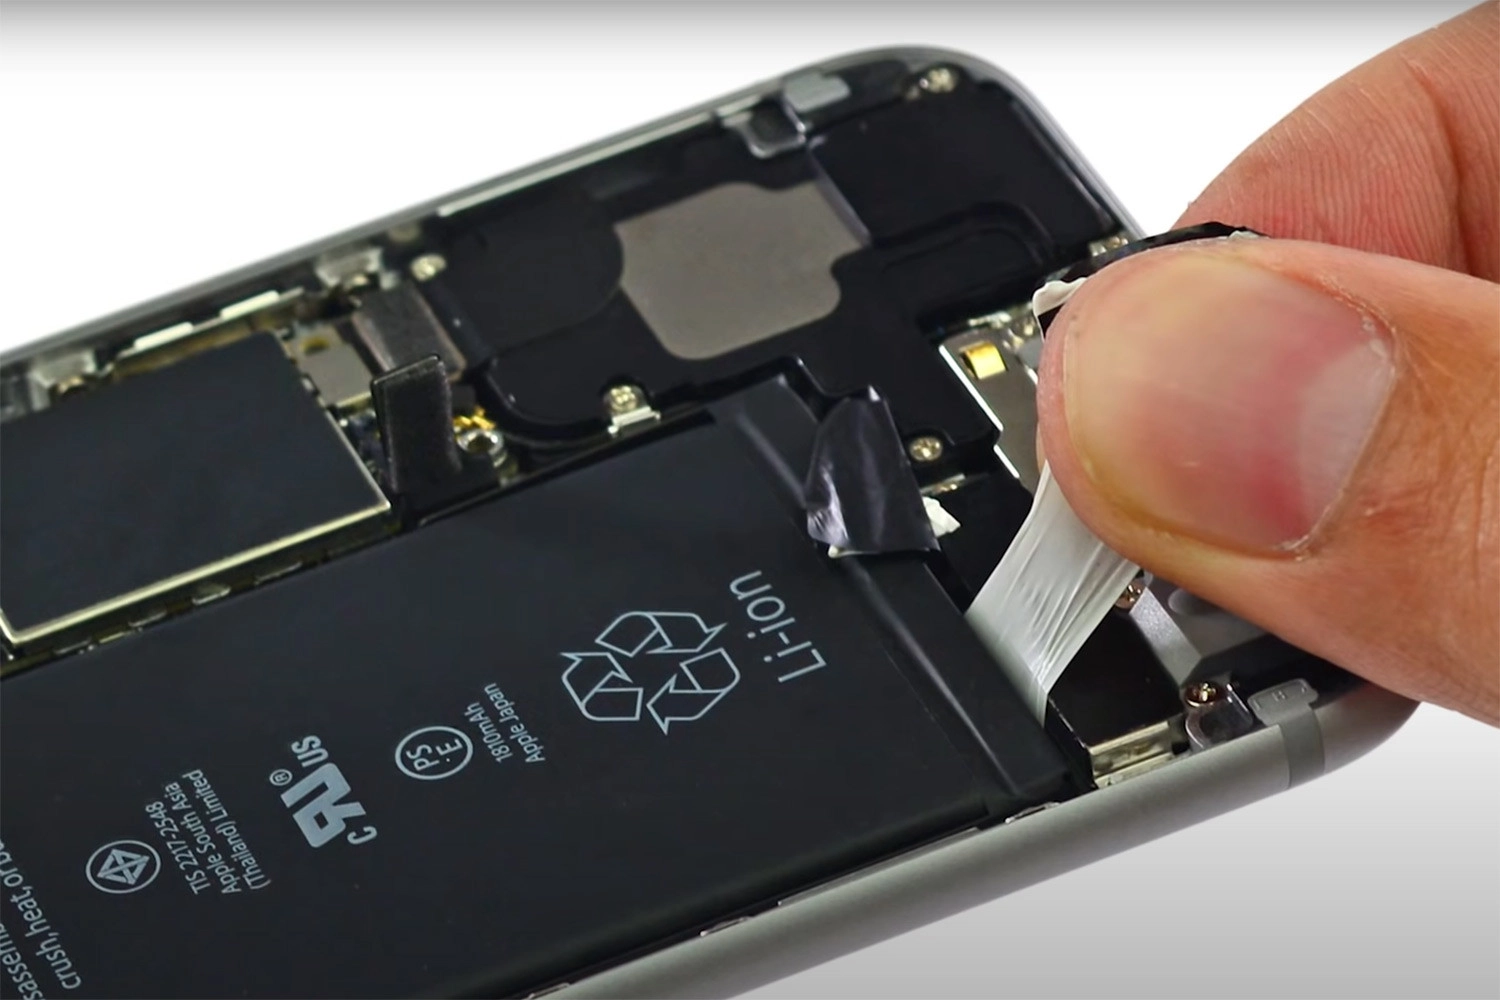 Thay Pin iPhone 6, Thay Pin iPhone 6 có đảm bảo không?